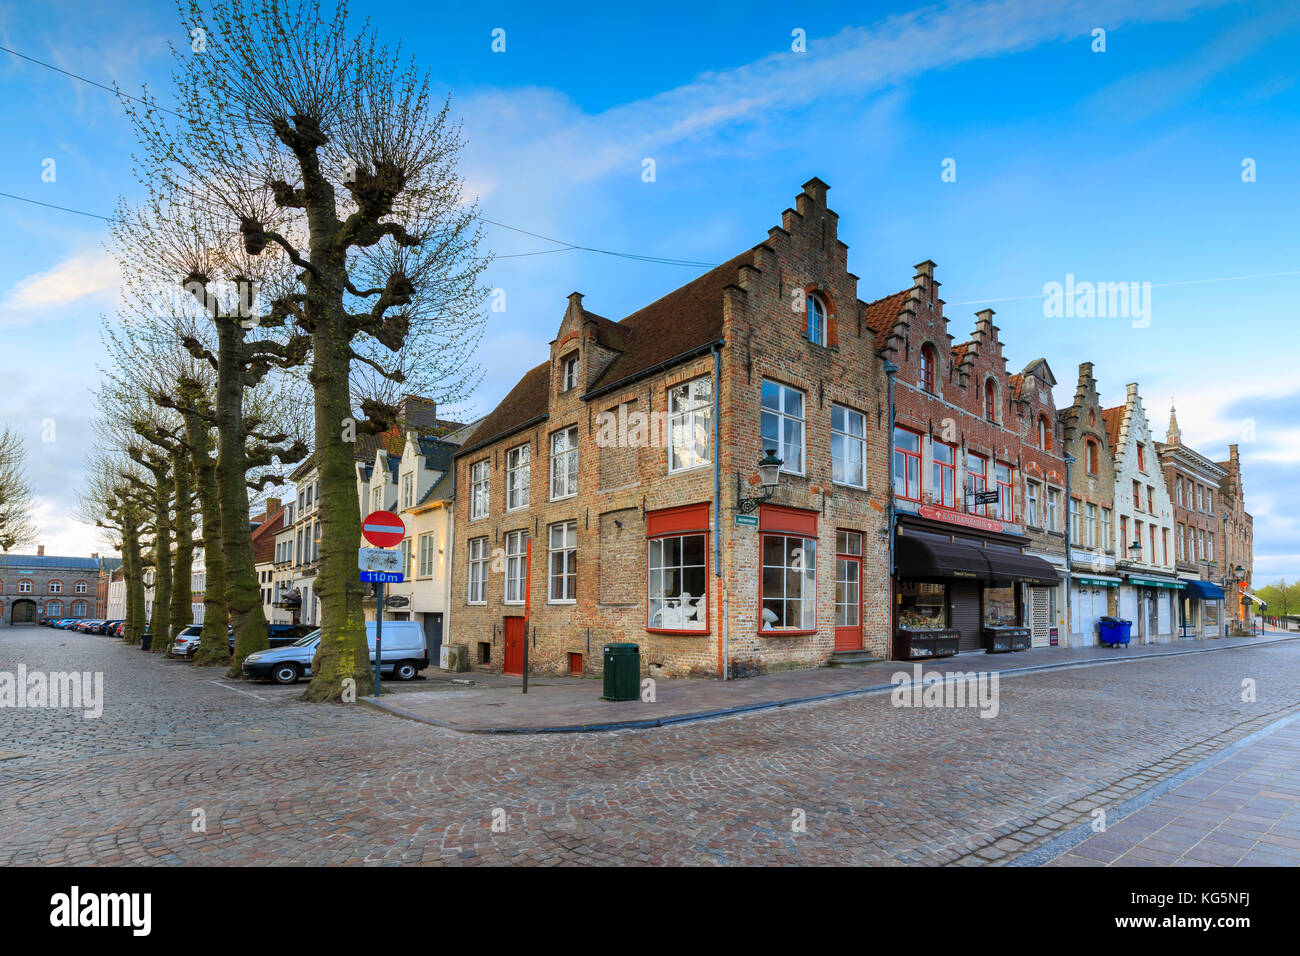 Ciel clair à l'aube sur les bâtiments historiques et maisons du centre-ville de Bruges Flandre occidentale belgique europe Banque D'Images